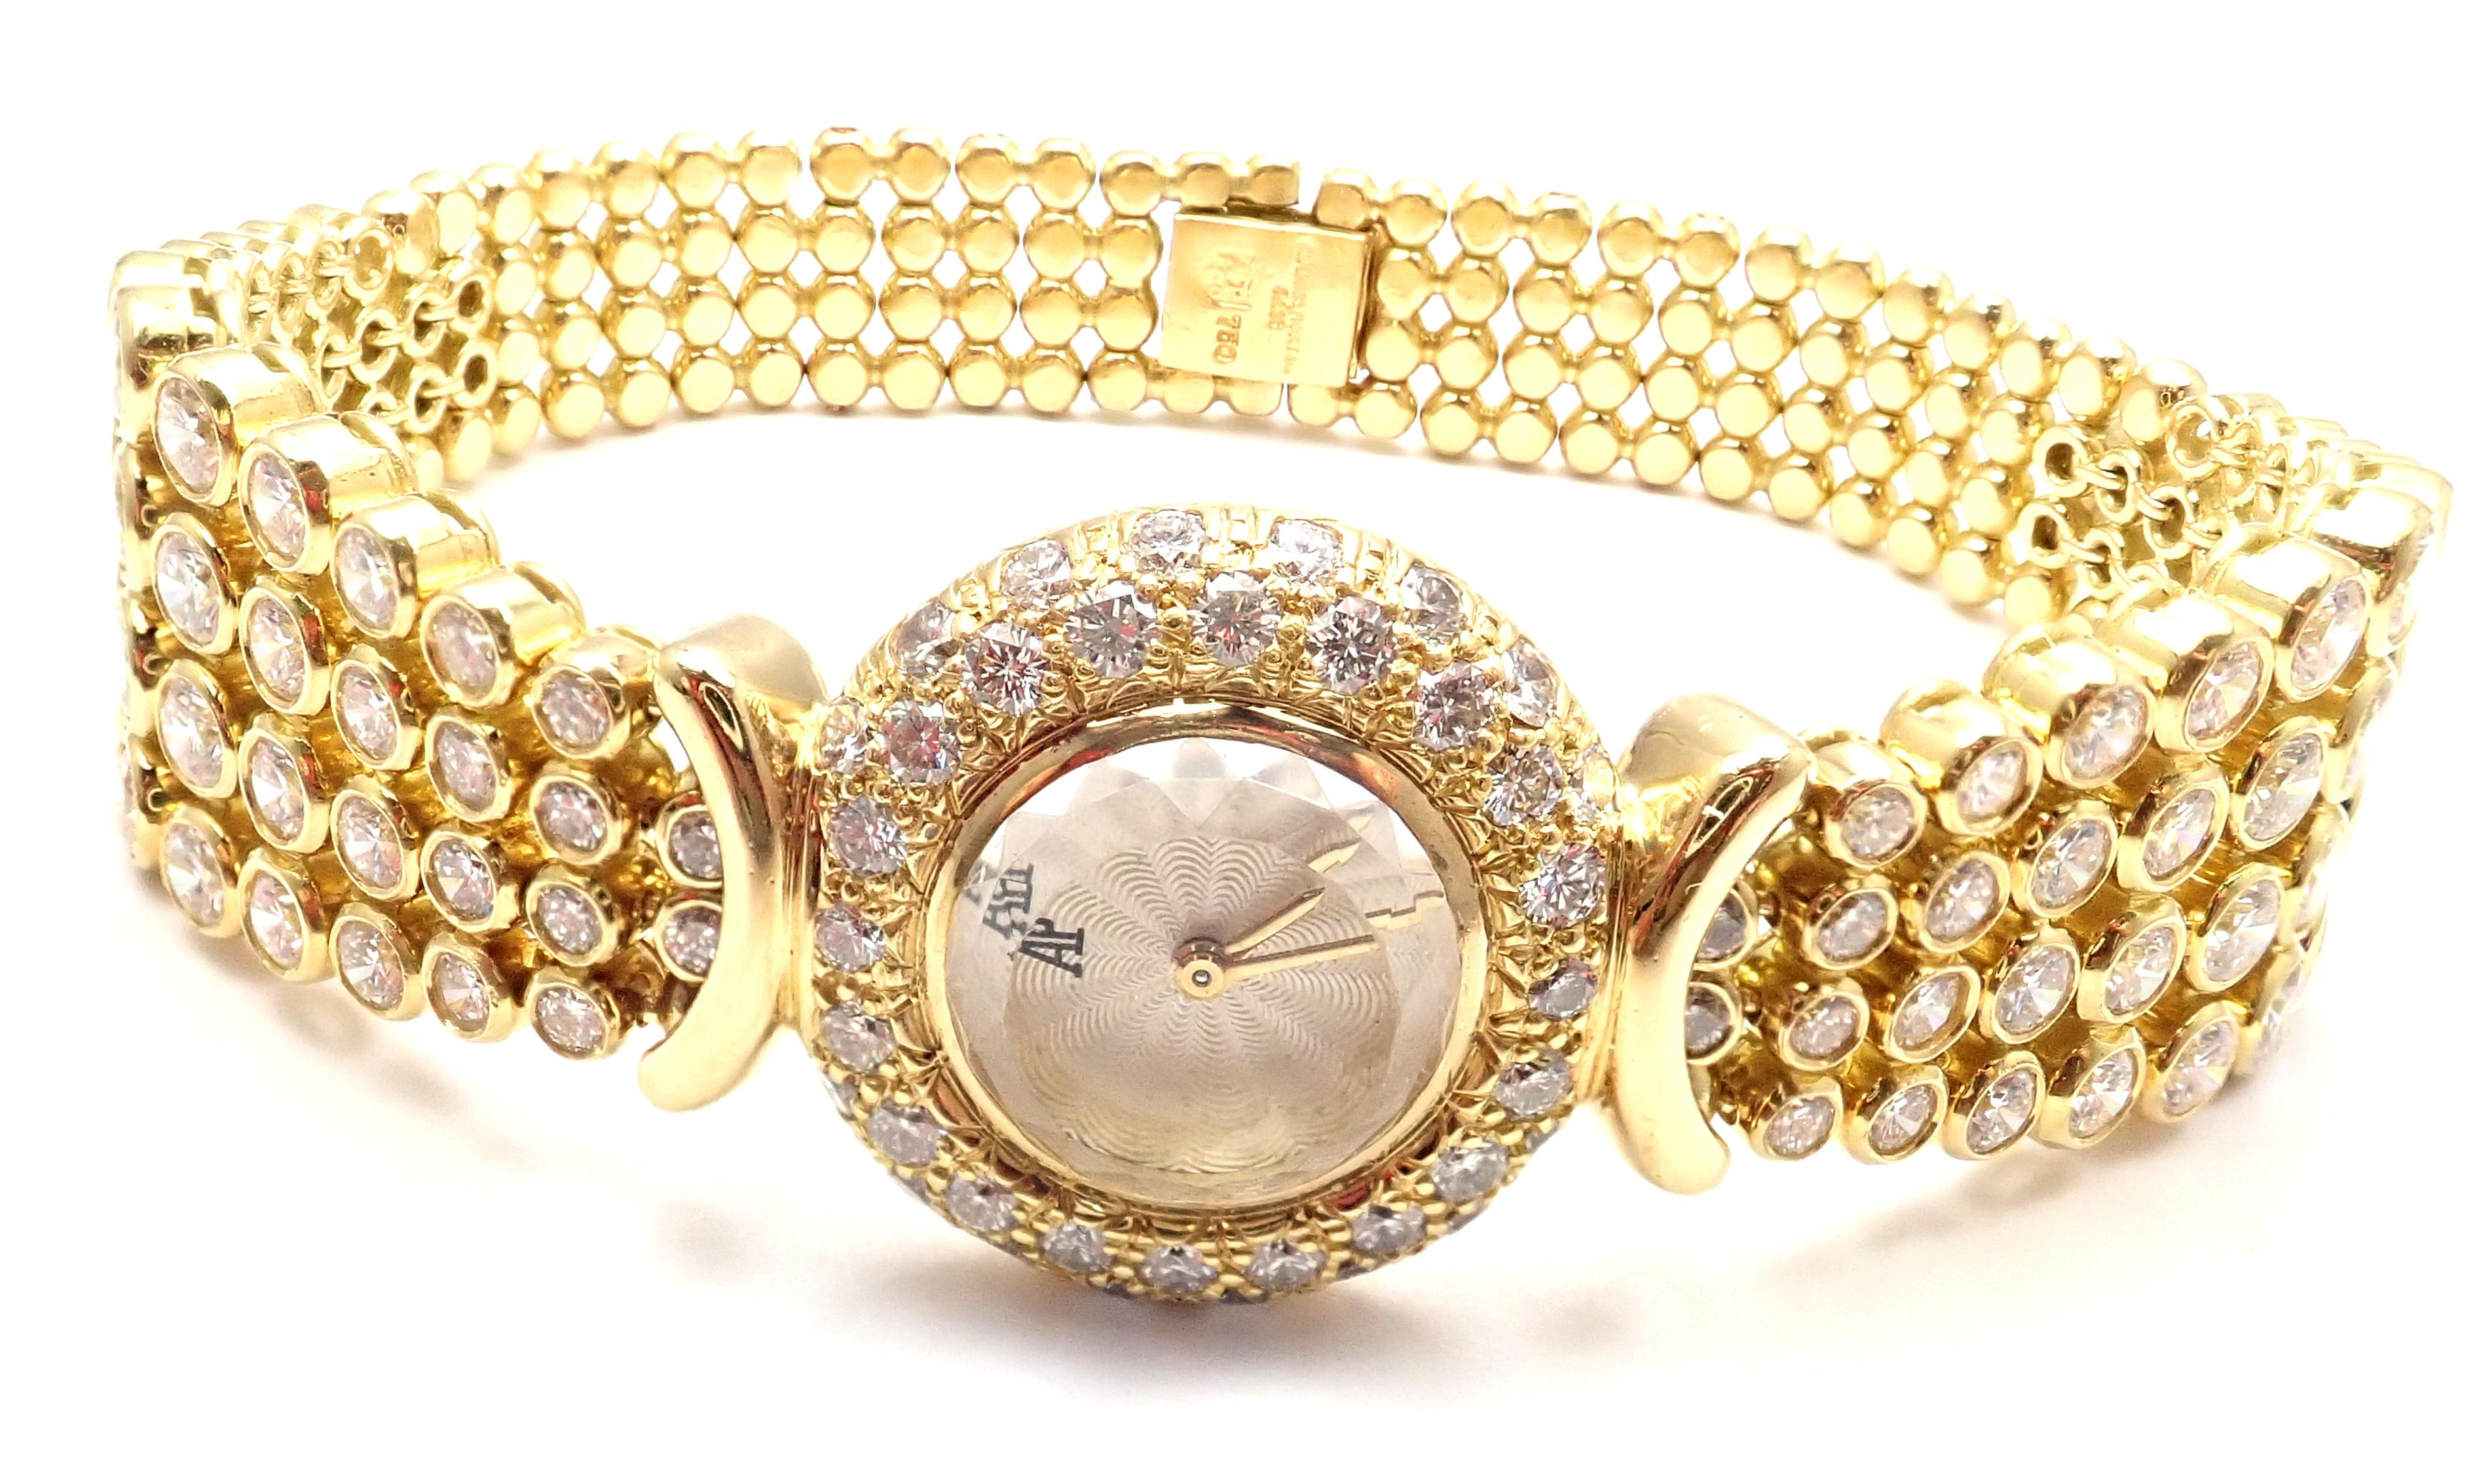 18k Gelbgold Diamant Dame Vintage Armbanduhr von Audemars Piguet. 
Mit 136 runden Diamanten im Brillantschliff, Reinheit VS1, Farbe E, Gesamtgewicht ca. 8ct
Diese Uhr kommt mit Audemars Piguet Box.
Einzelheiten:
Marke:   Audemars Piguet 
Gehäuse